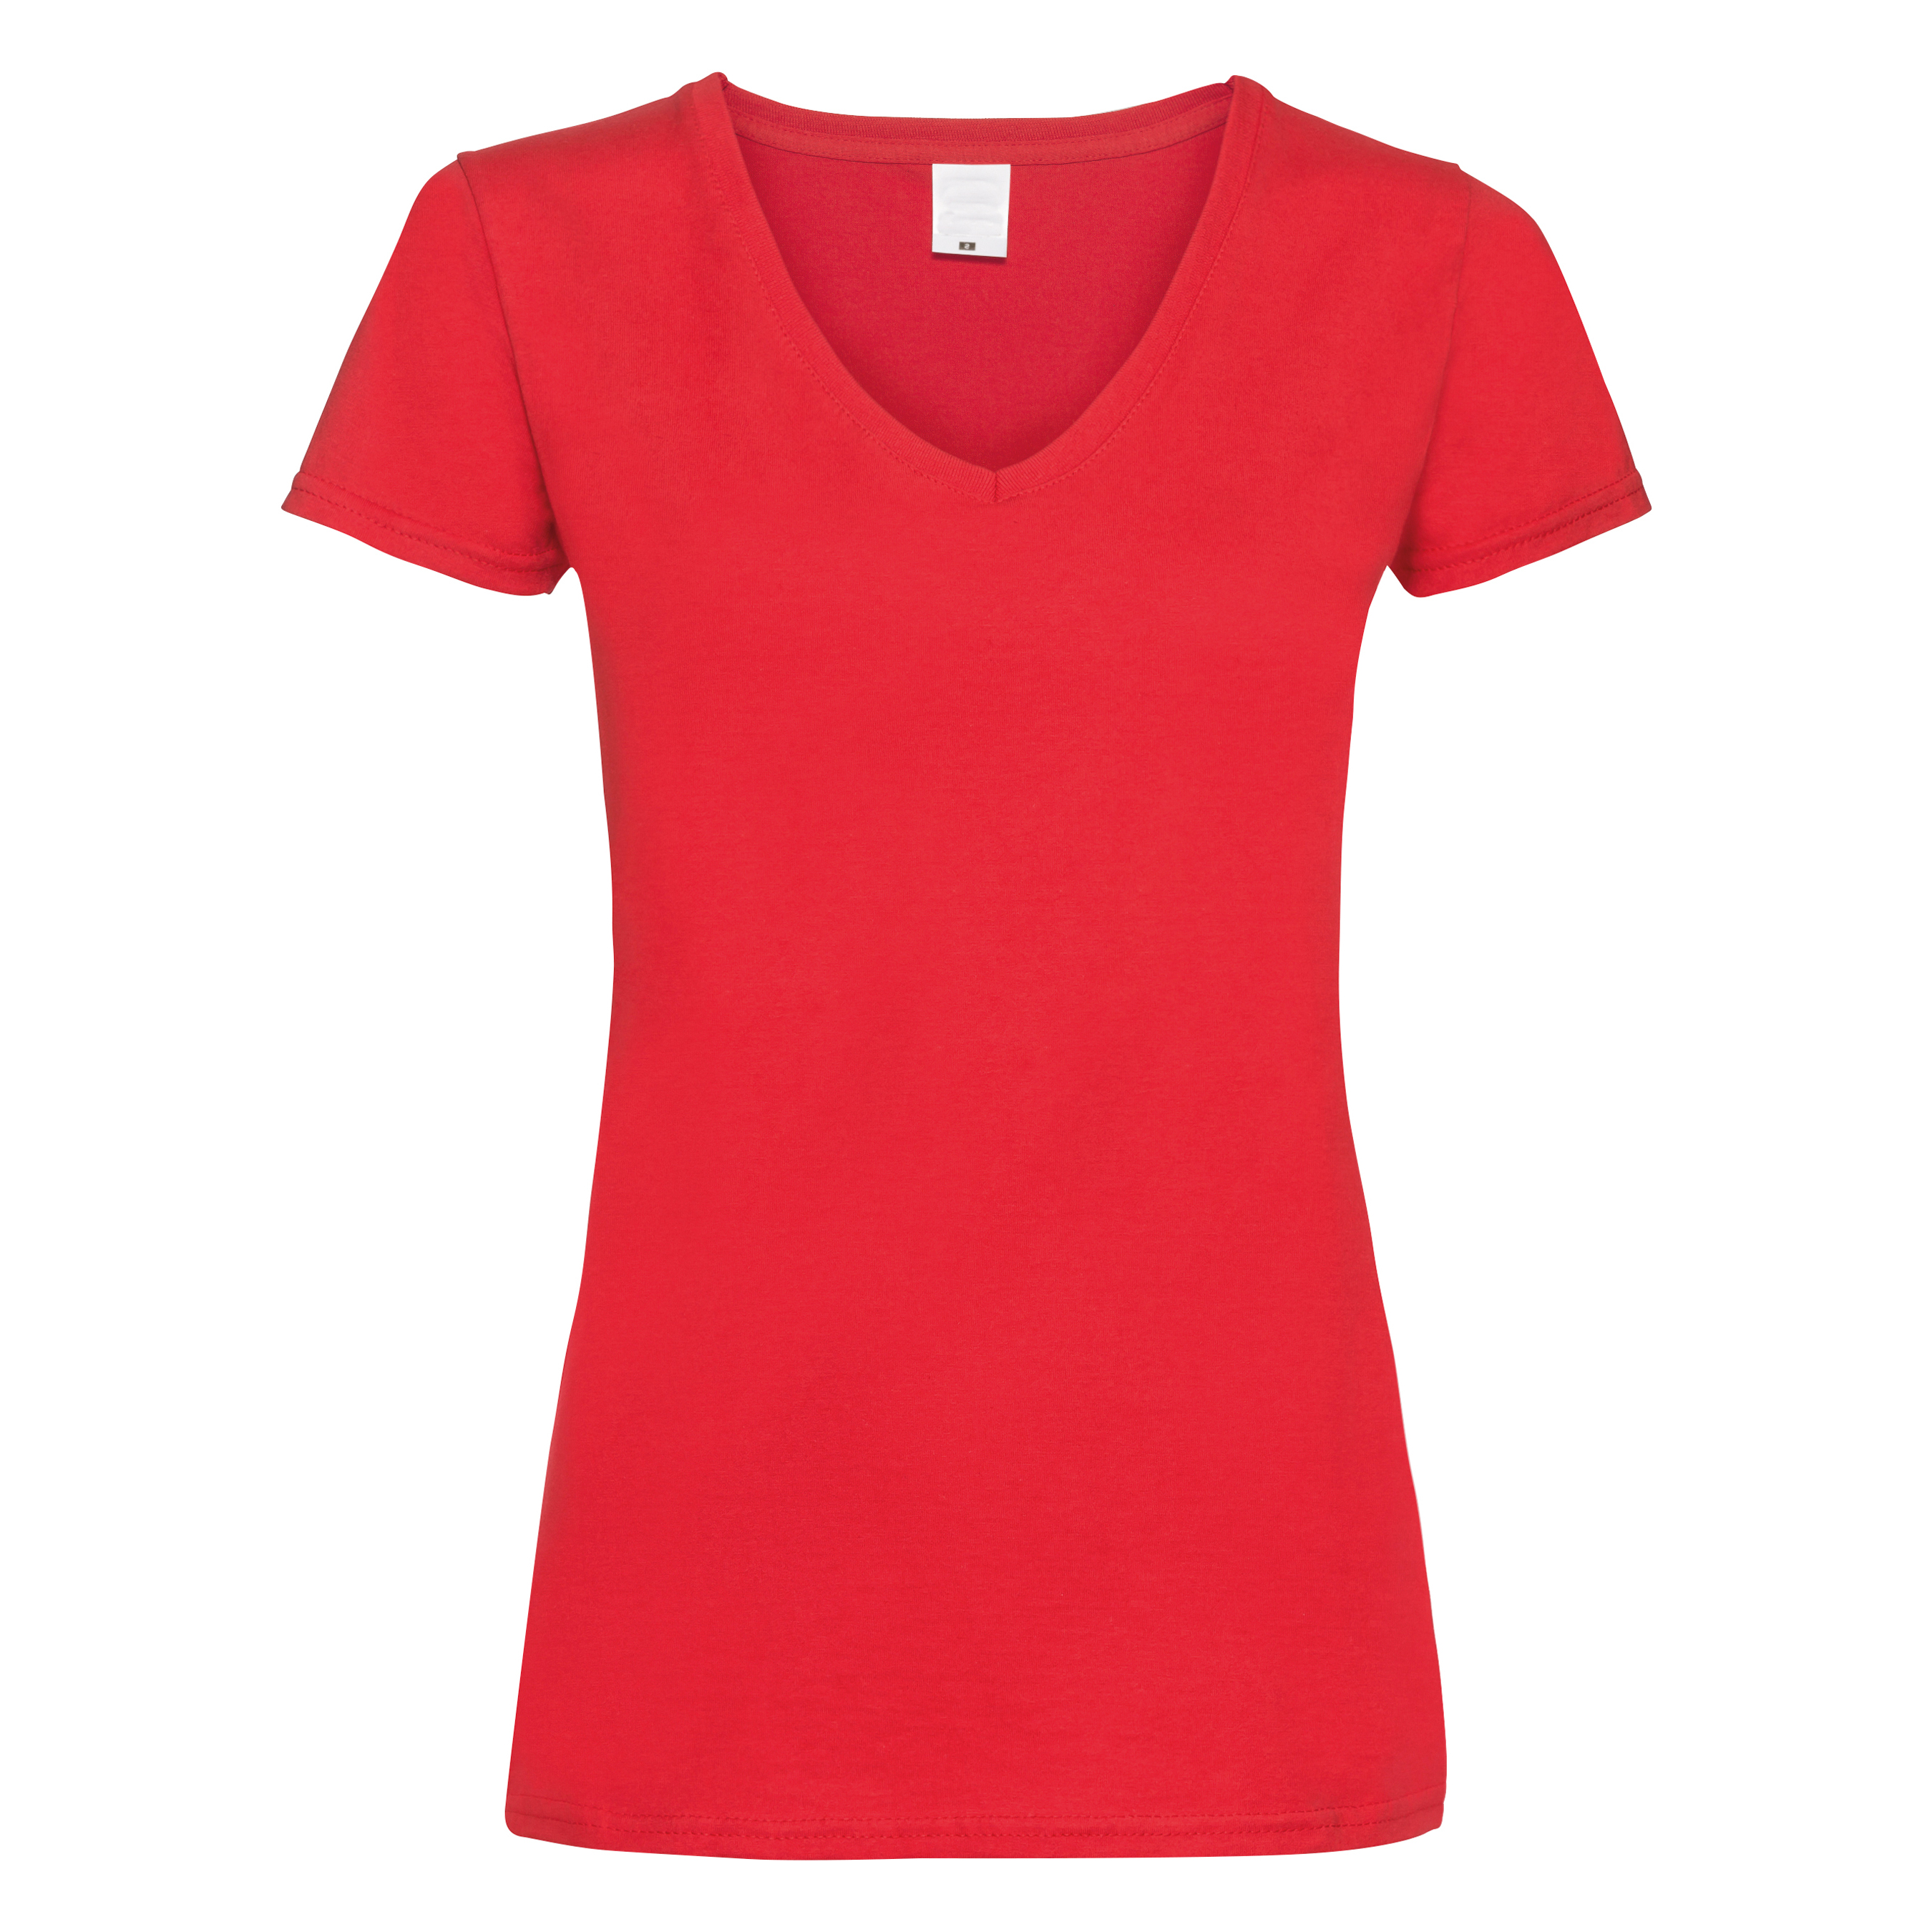 Camiseta Entallada De Manga Corta Y Cuello En V Universal Textiles - rojo - 